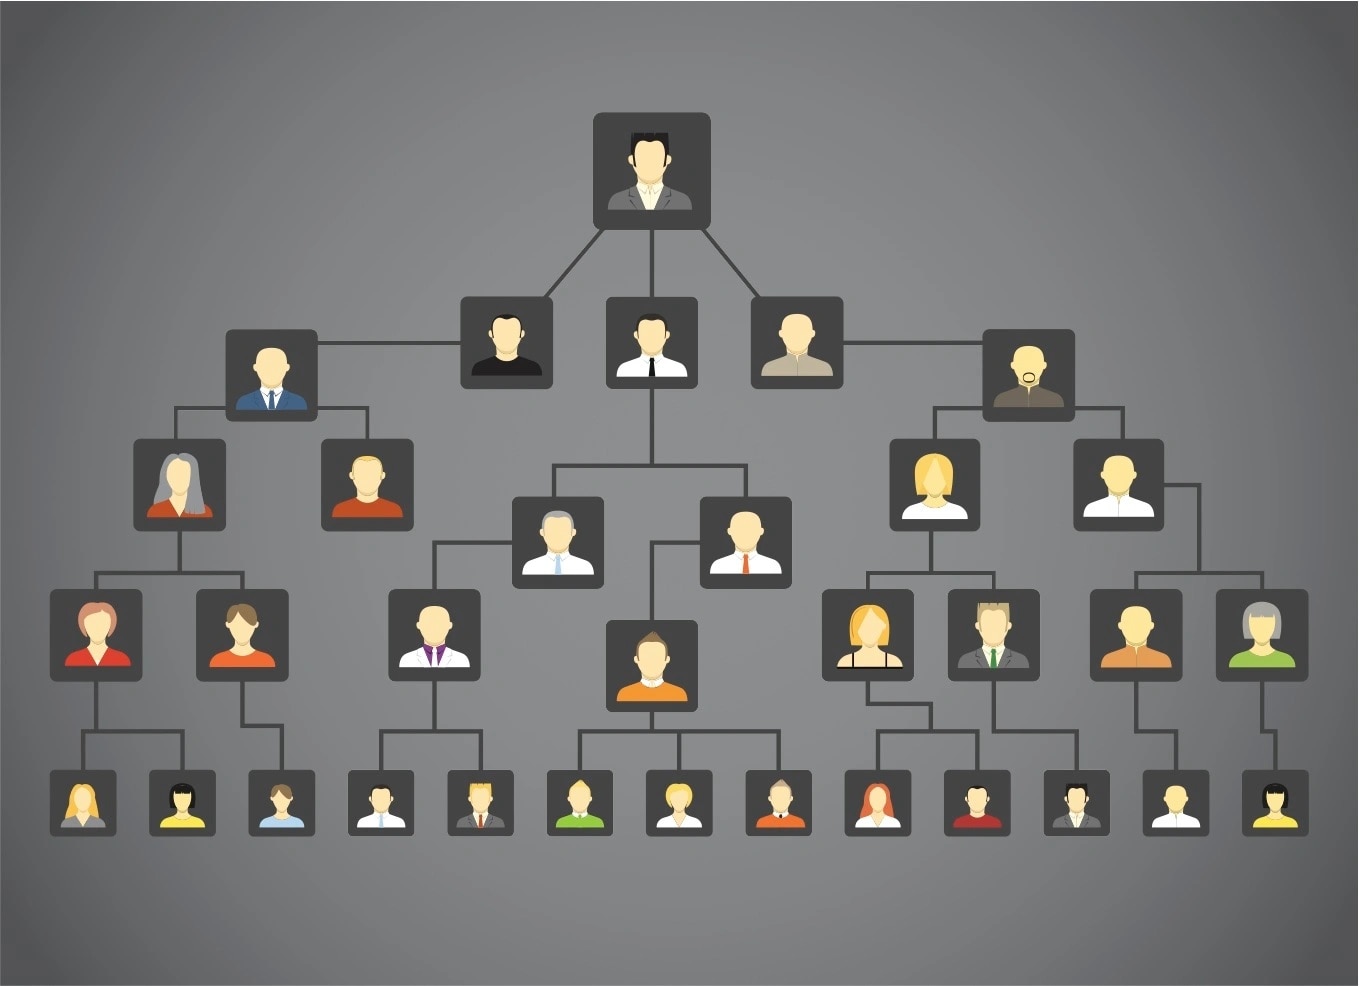  sample family tree